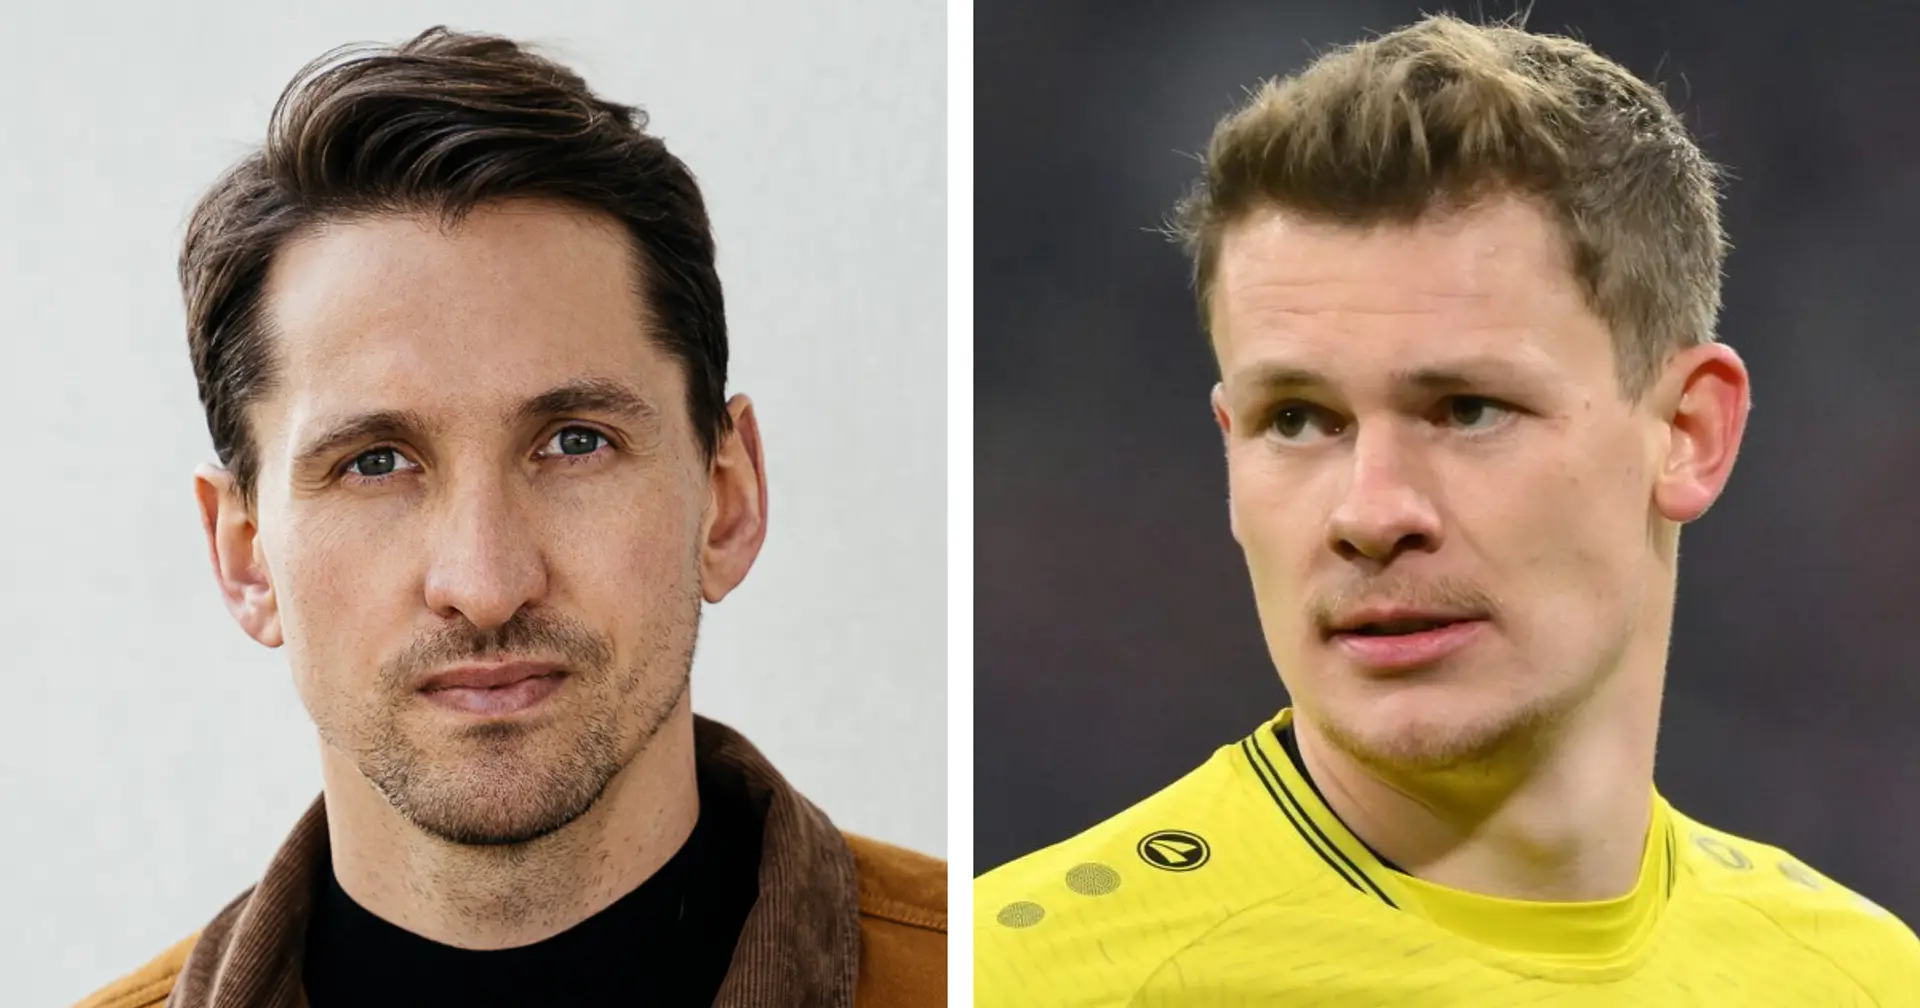 Ex-DFB-Torhüter traut Alex Nübel die Nummer 1 bei Bayern zu: "Er ist als Torhüter und Persönlichkeit unheimlich gereift"